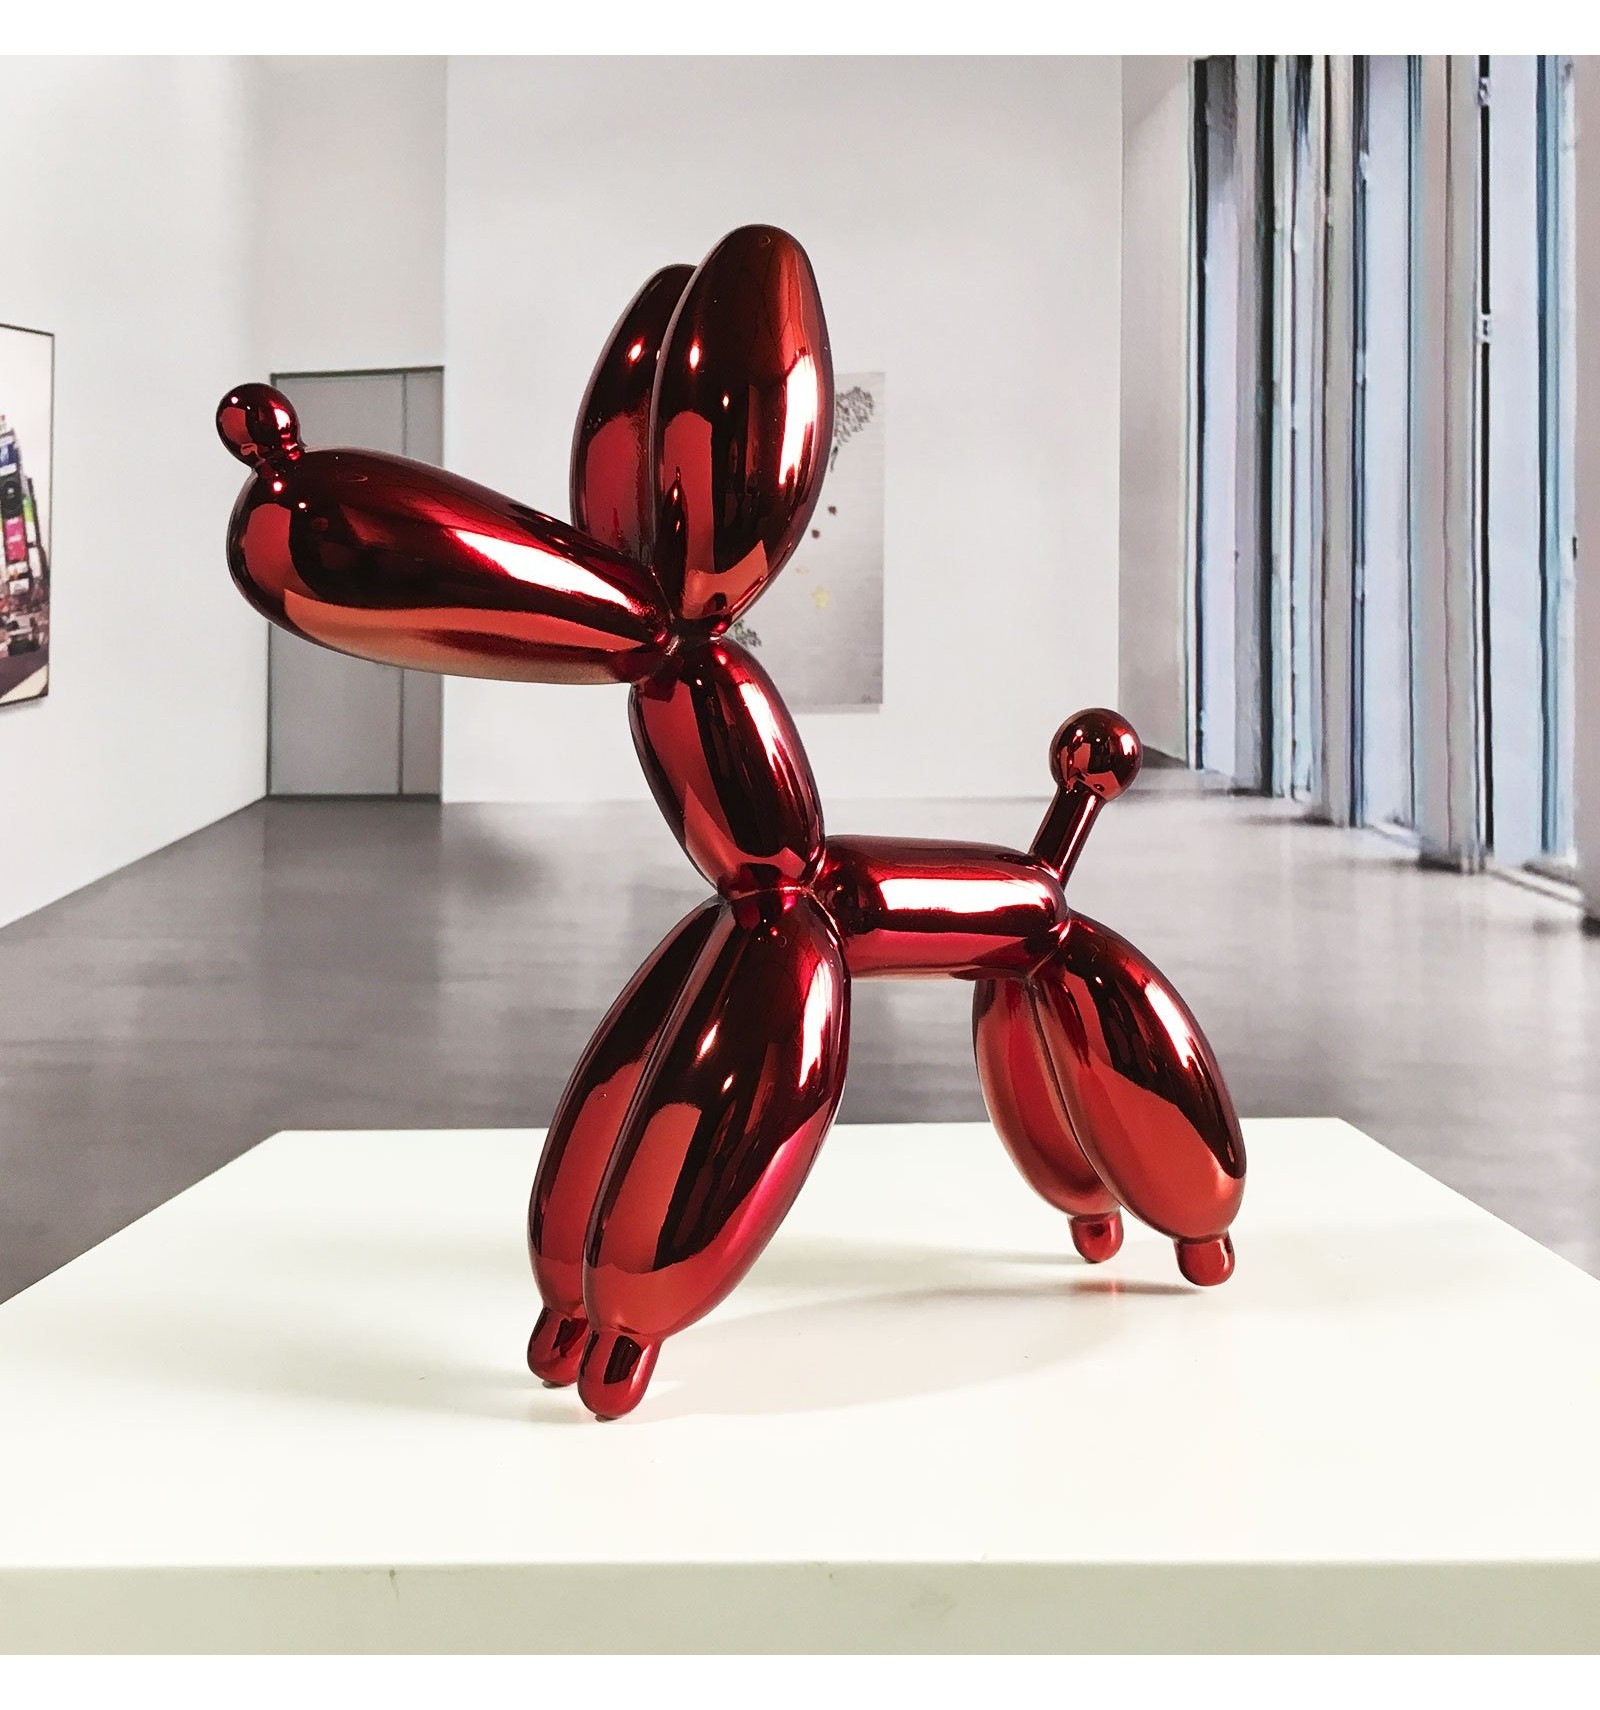 Sculpture en résine Chien ballon petit modèle rouge métallisé